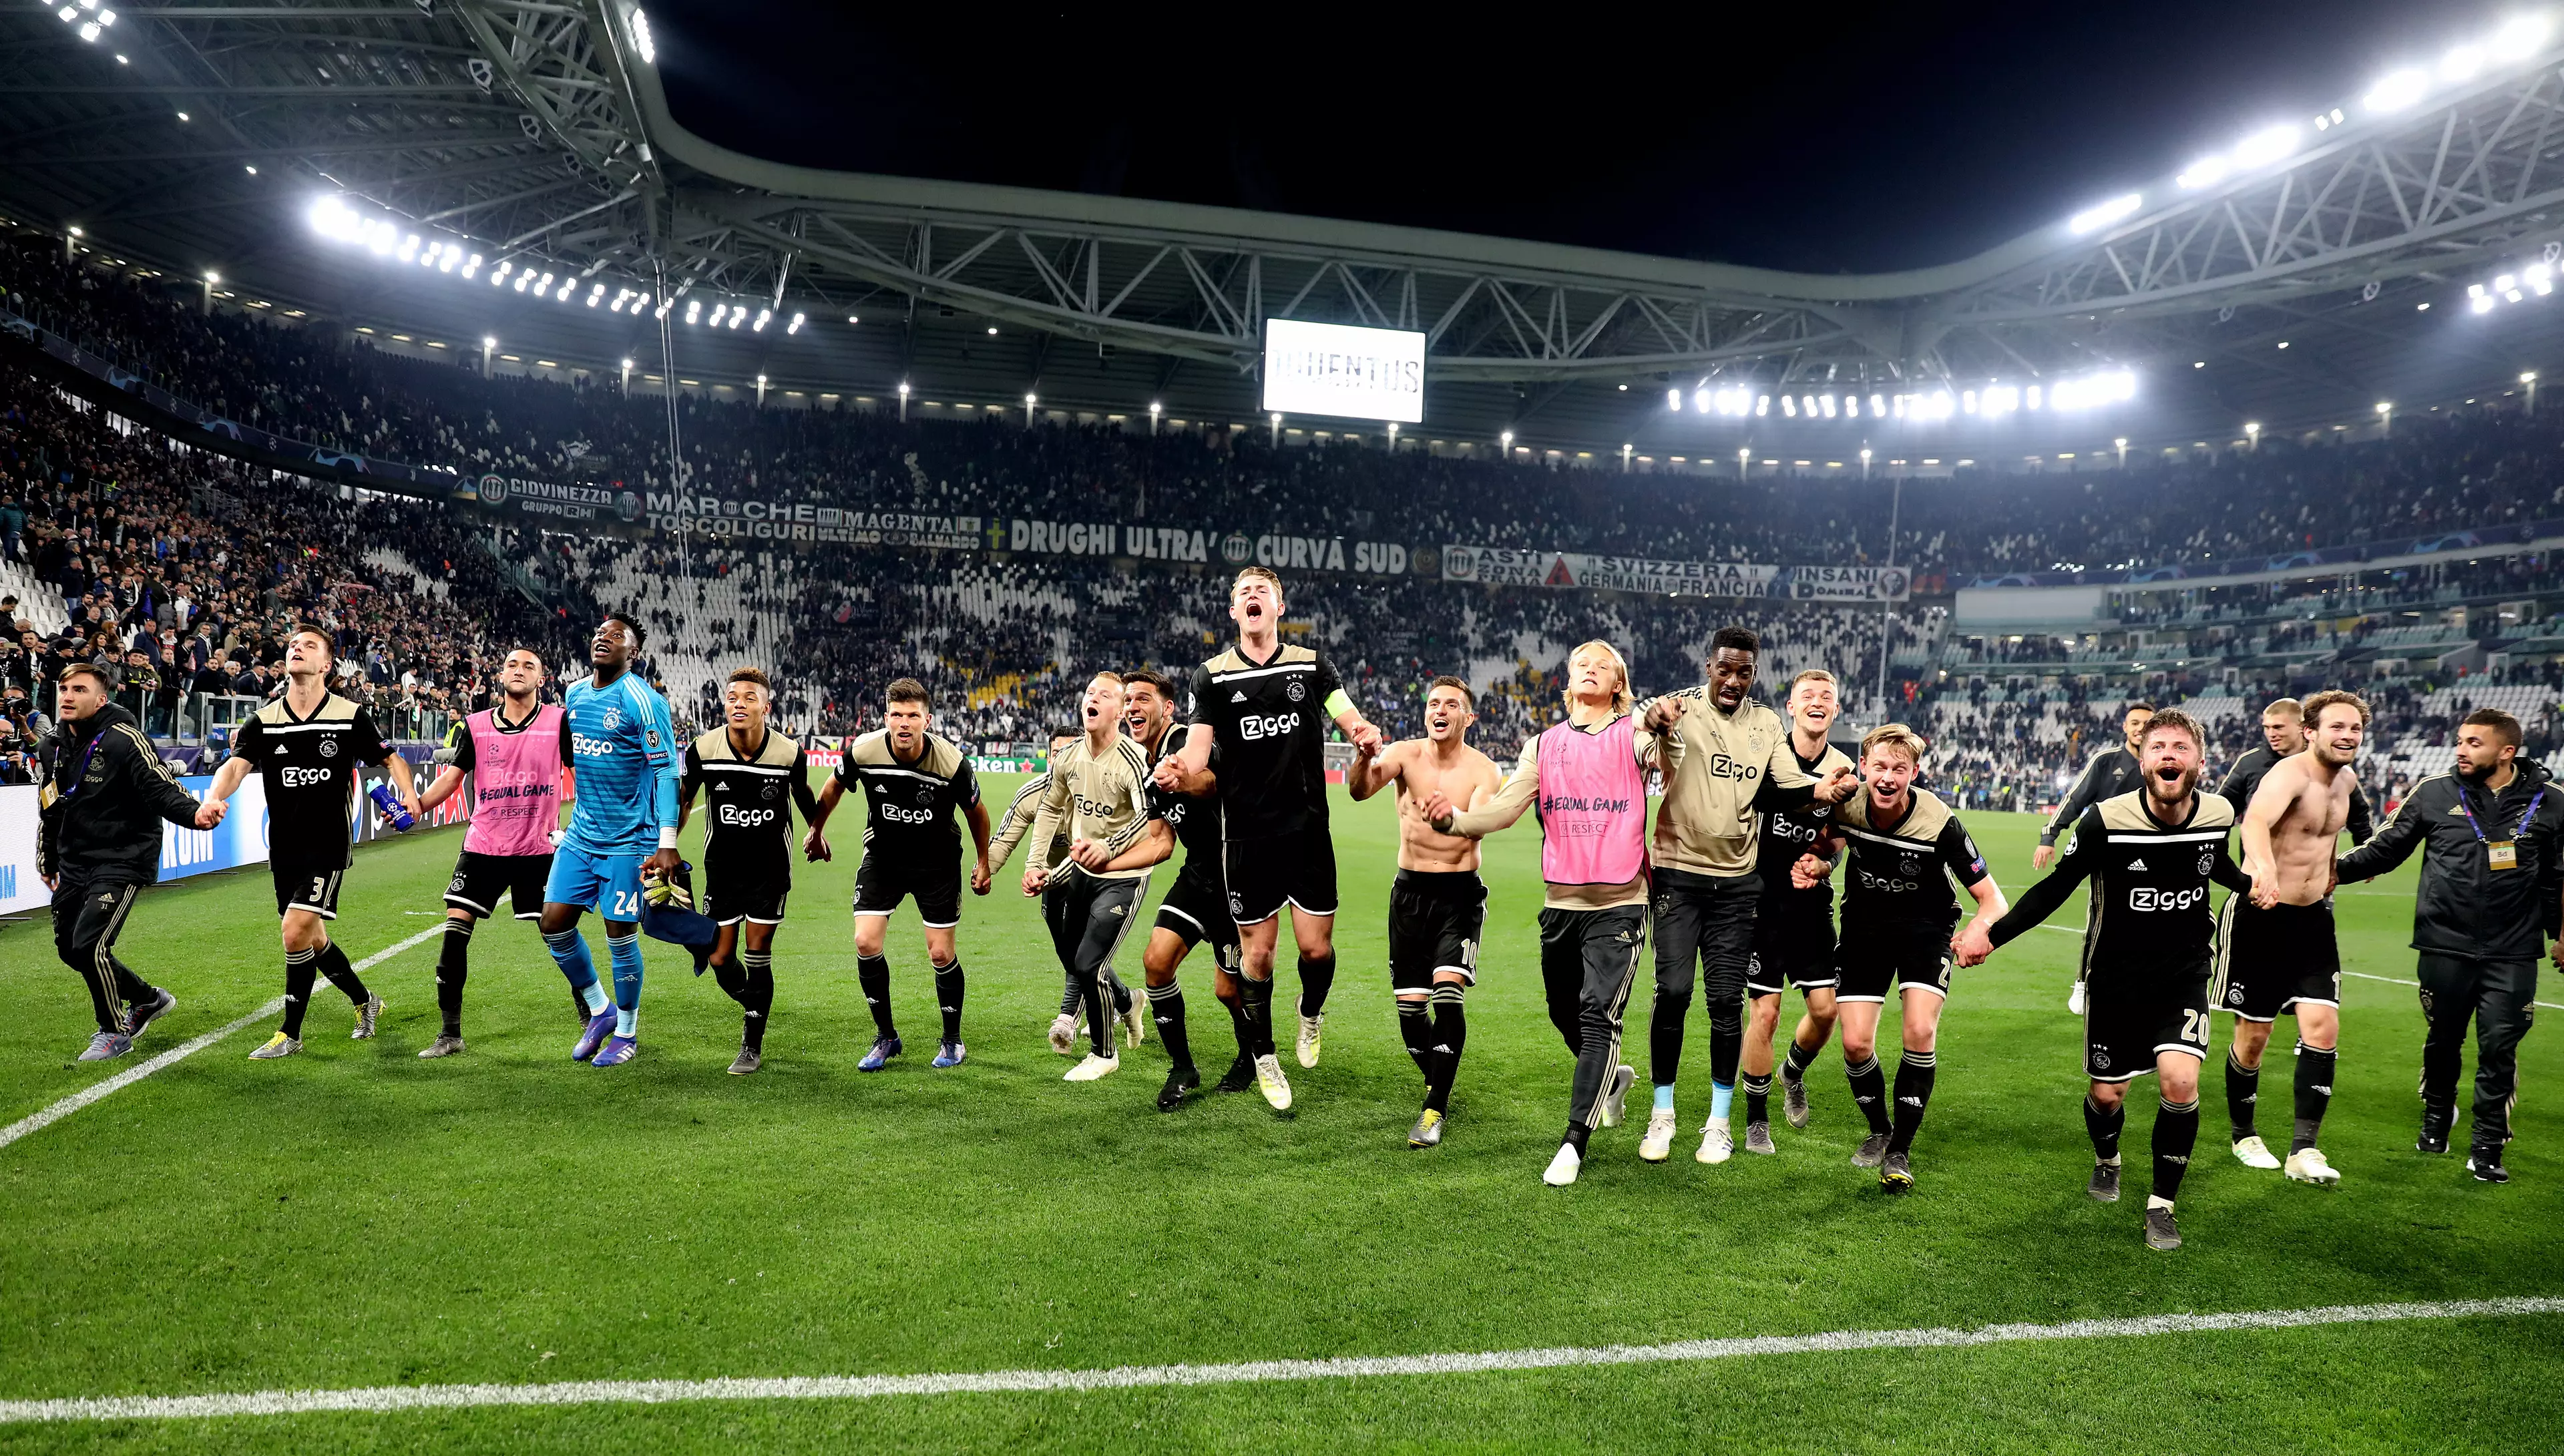 Ajax celebrate winning against Juventus. Image: PA Images